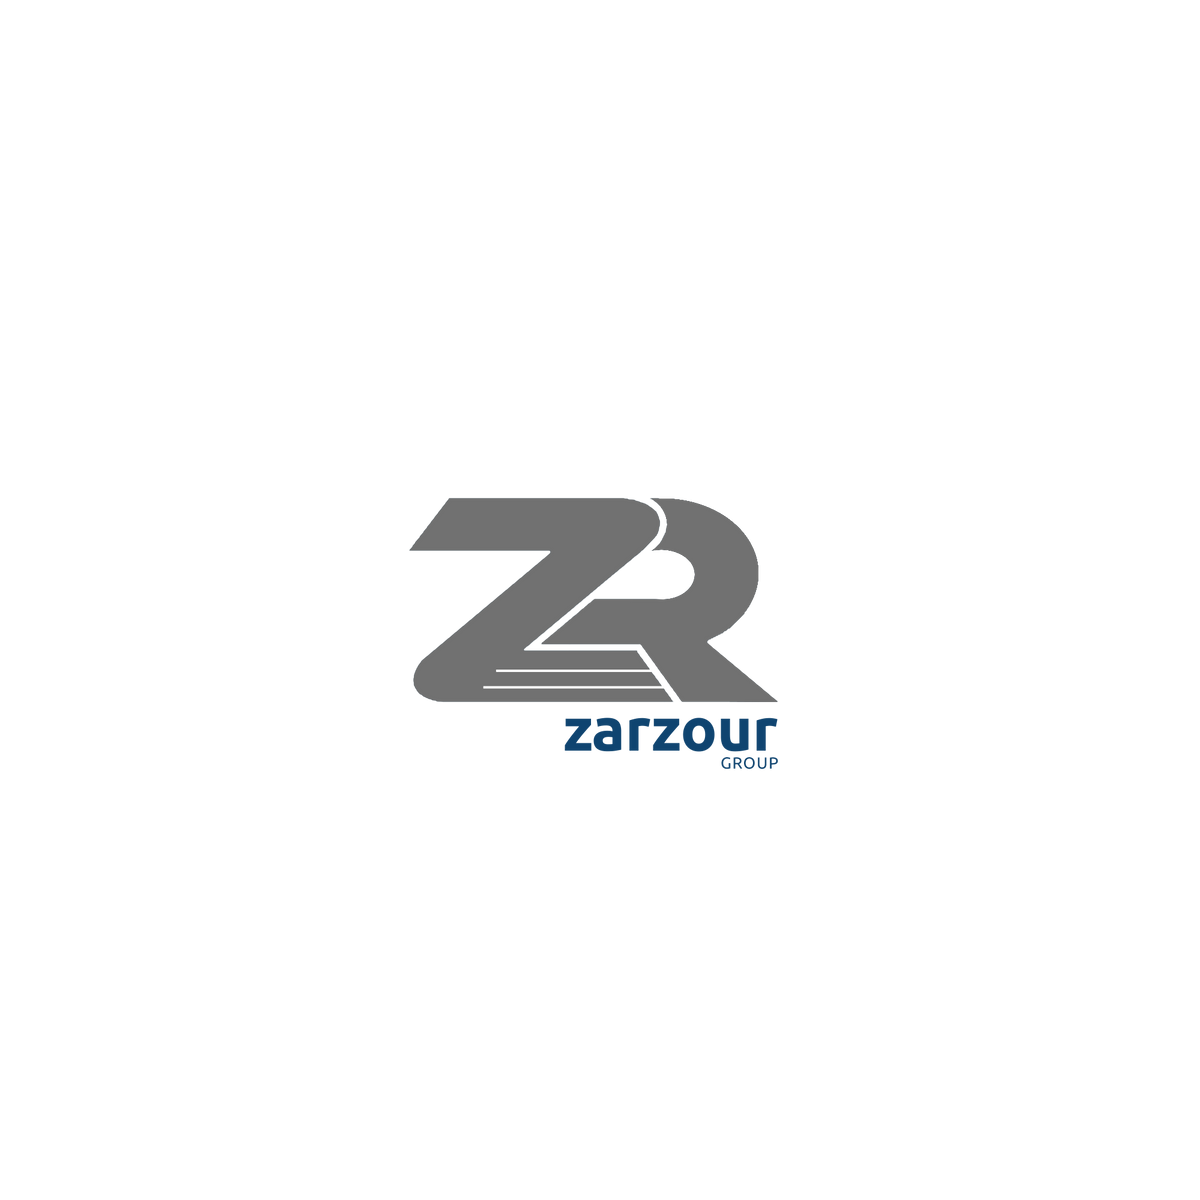 Zarzour Group